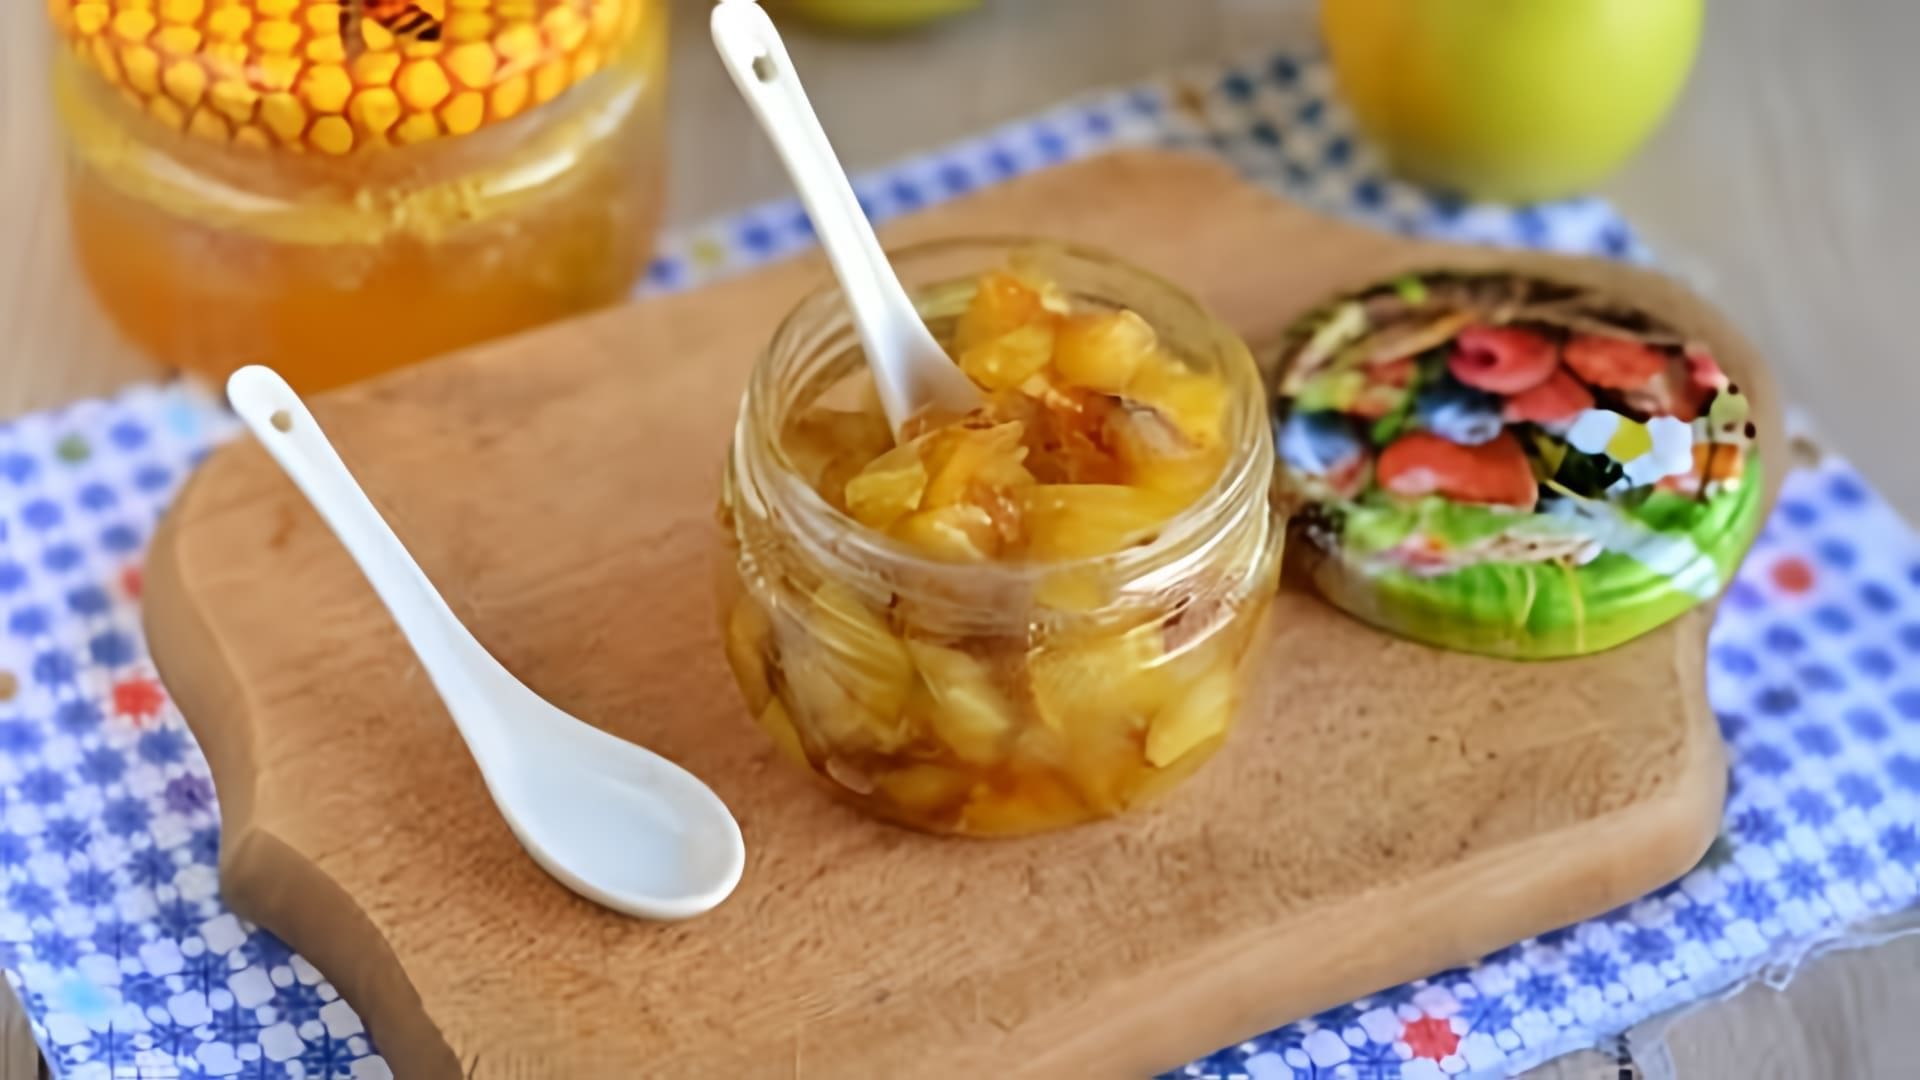 Вкусный и ароматный десерт можно приготовить из яблок и меда. Яблочное варенье с медом готовится легко и просто. 